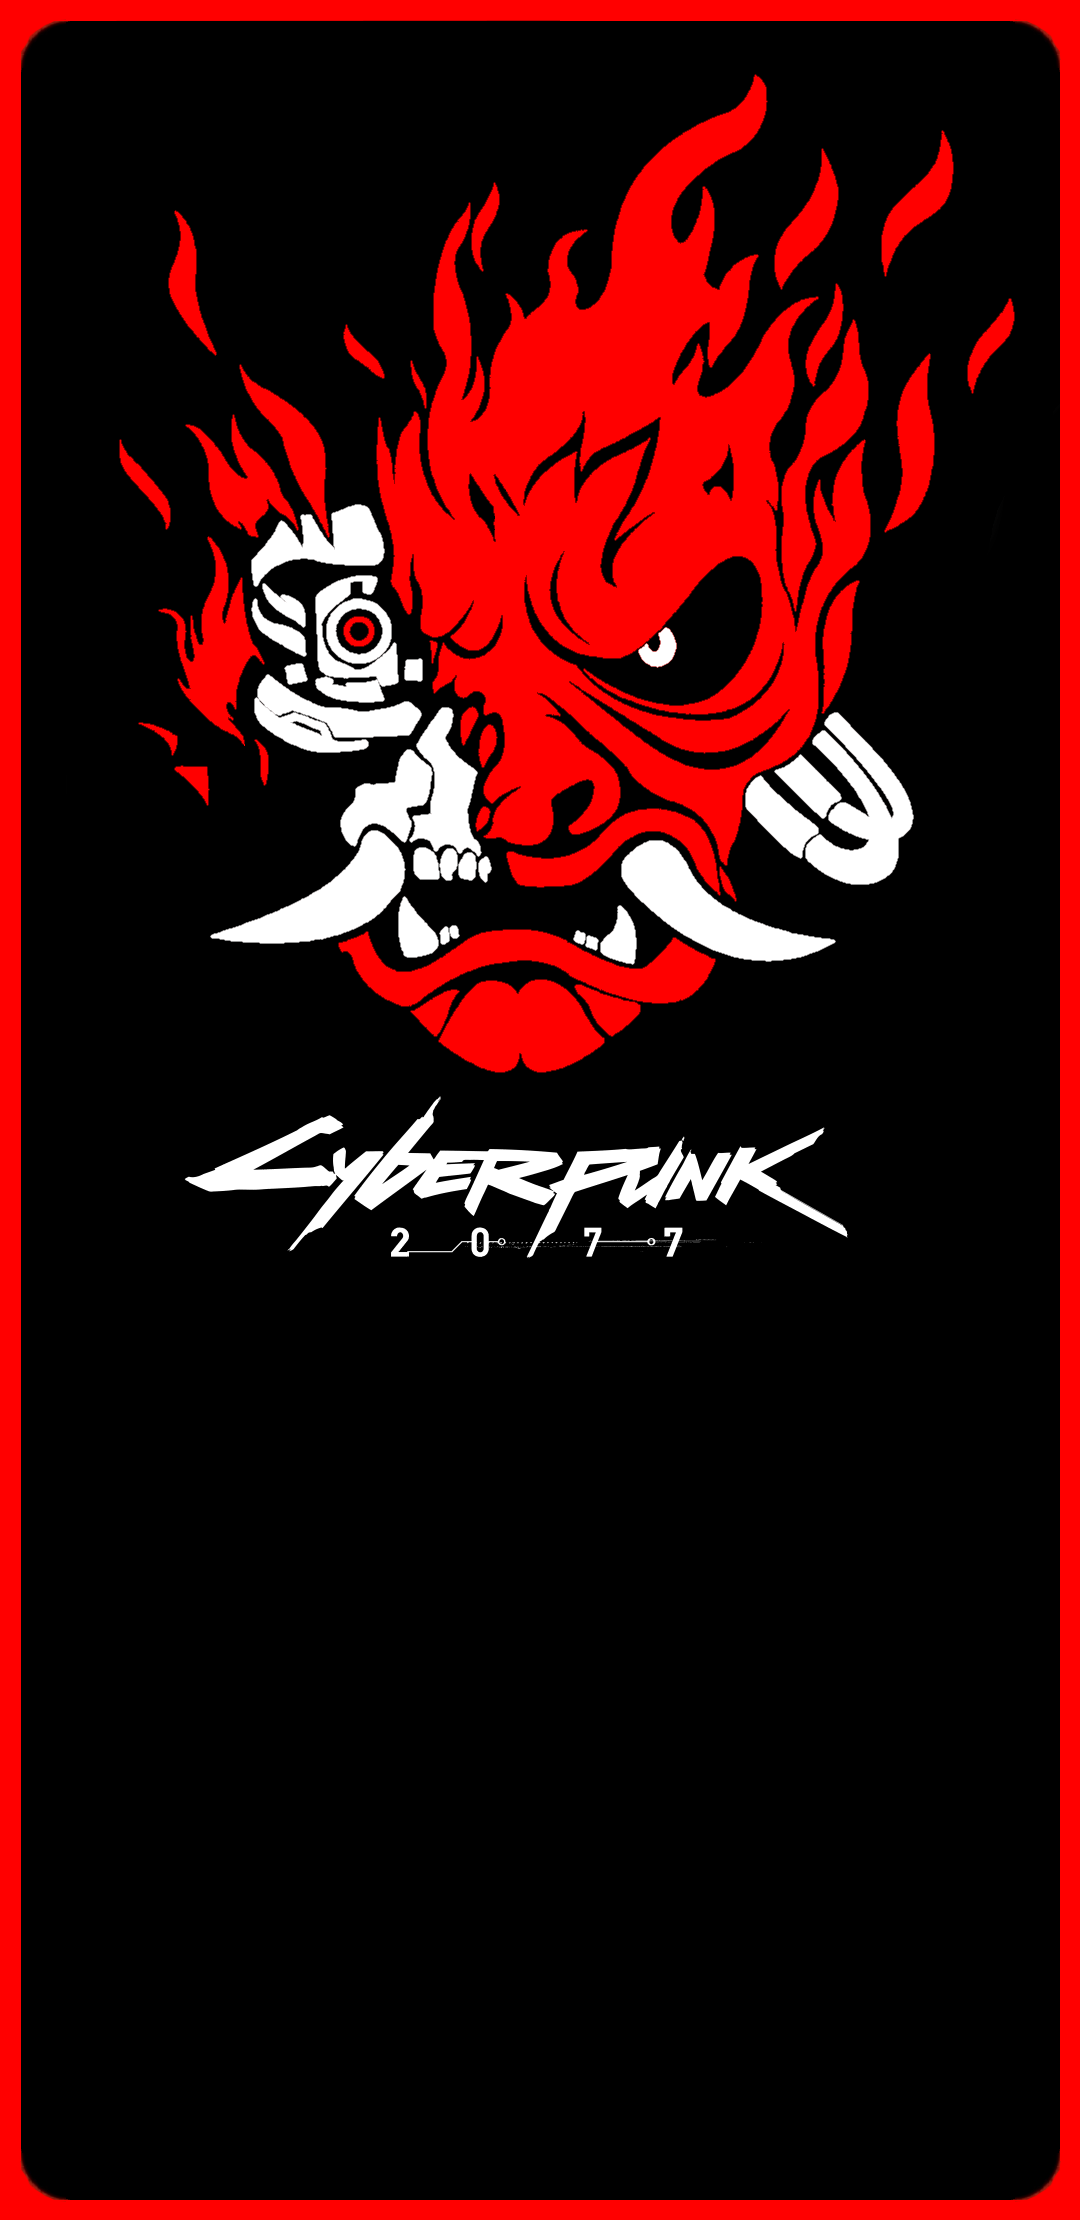 Cyberpunk 2077 Samurai. Cyberpunk tattoo, Cyberpunk aesthetic